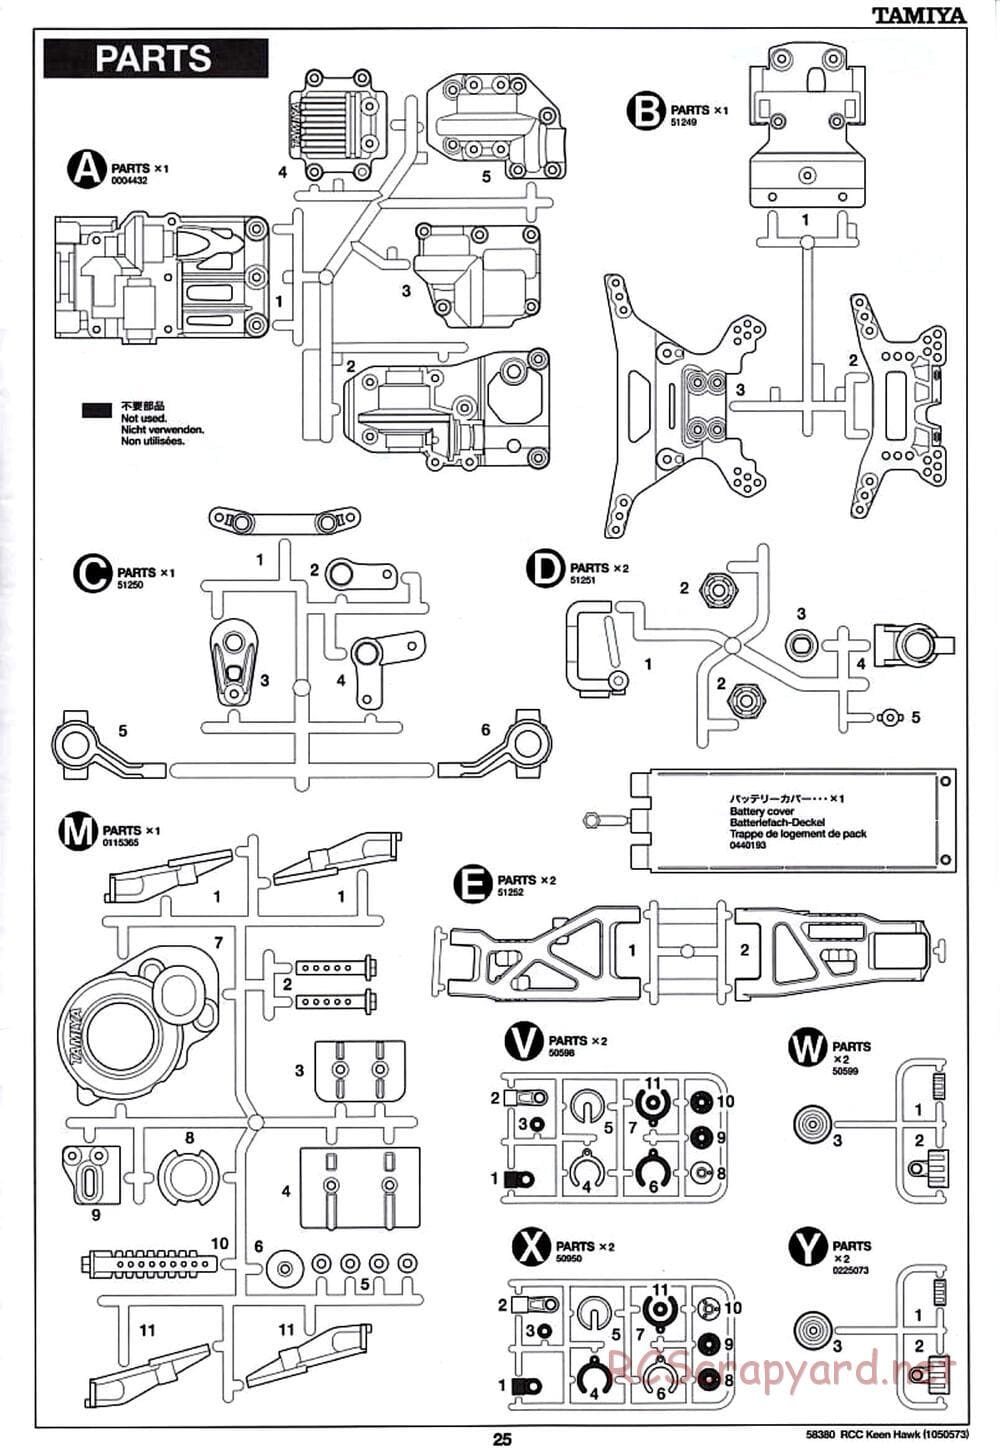 Tamiya - Keen Hawk Chassis - Manual - Page 25